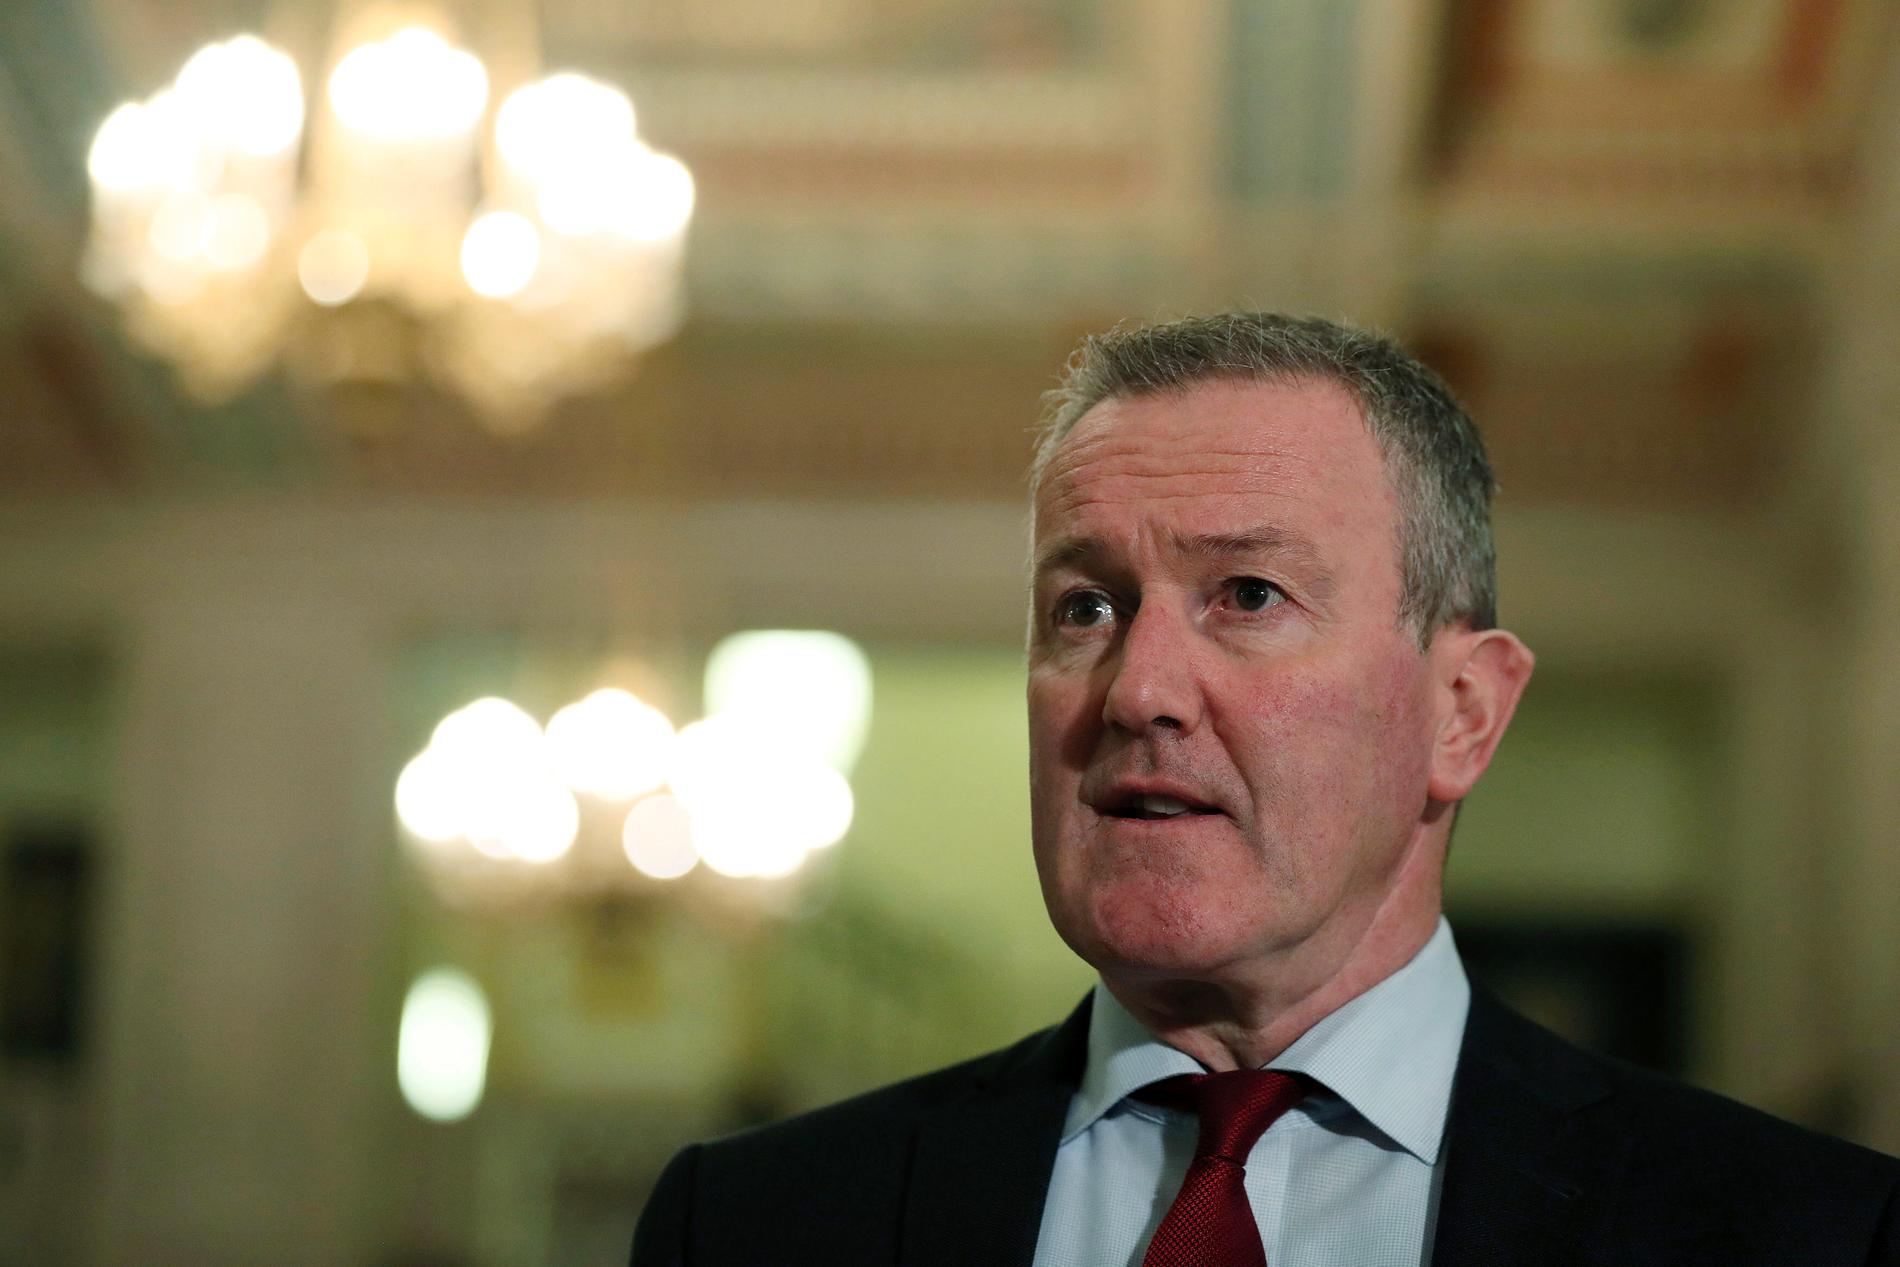 Conor Murphy är finansminister i den regionala regeringen i Nordirland, men har också dragits in i valkampen i Republiken Irland. Motståndarna kräver att Sinn Féin-politikern Murphy avgår för sina uttalanden om en mördad 21-åring. Arkivfoto.